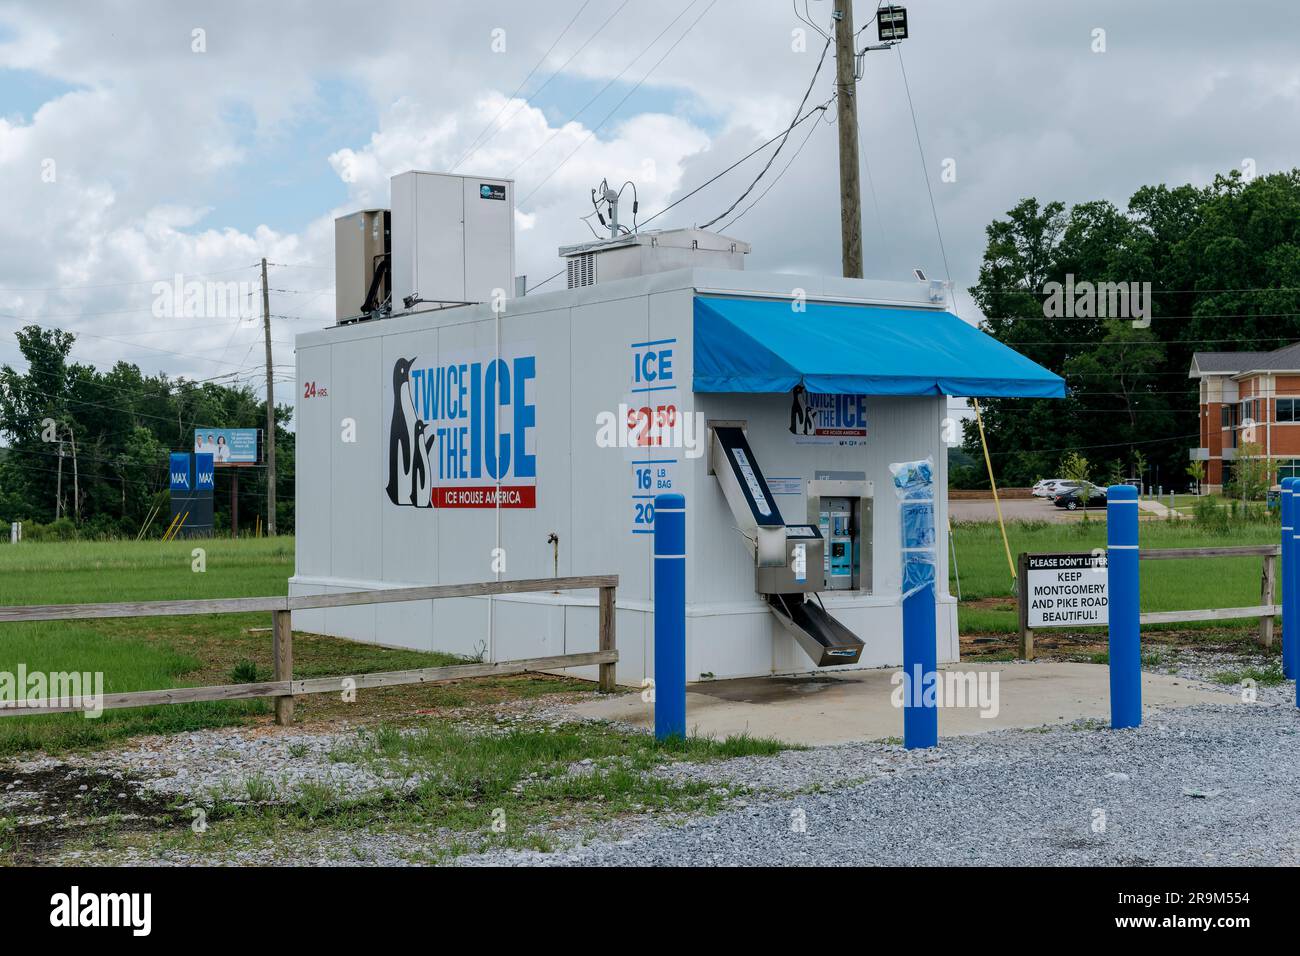 Gran máquina de hielo independiente para hacer usted mismo compras de hielo en bolsas más populares durante los calurosos meses de verano en Montgomery Alabama, EE.UU.. Foto de stock